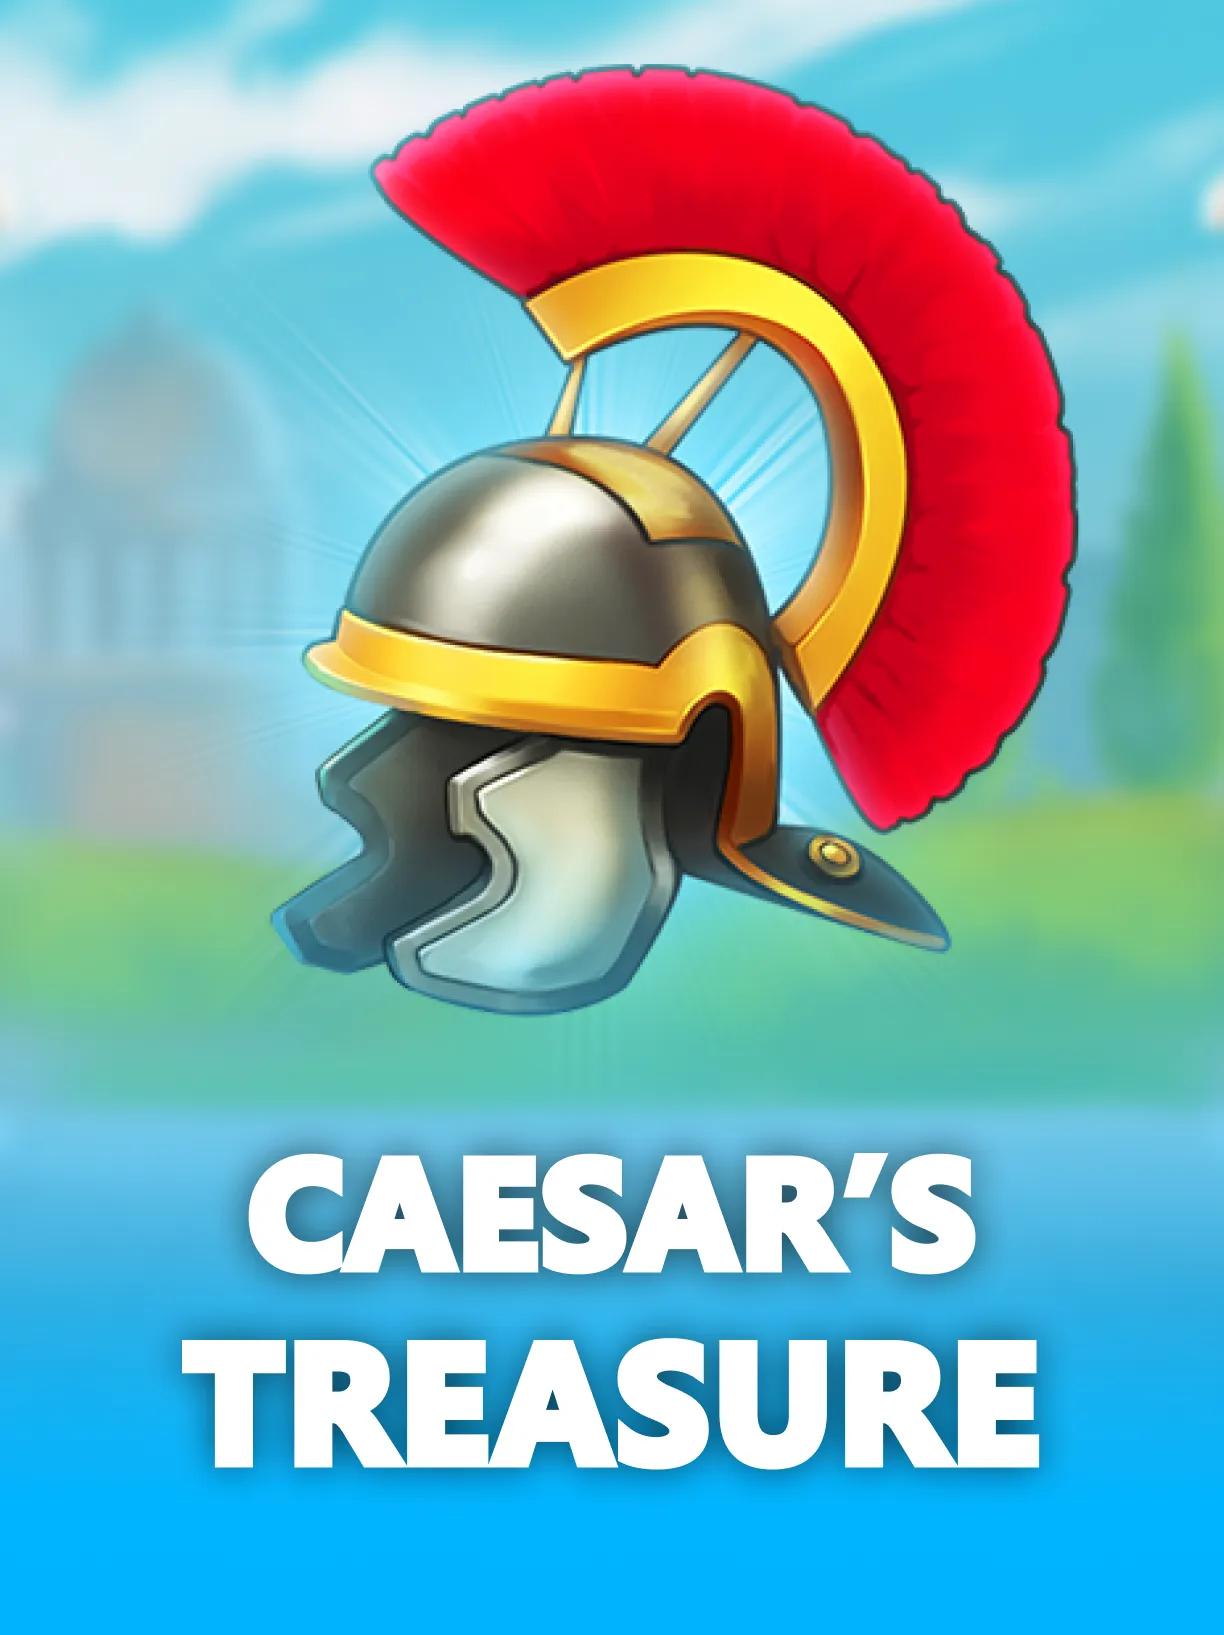 ug_Caesars_Treasure_square.webp